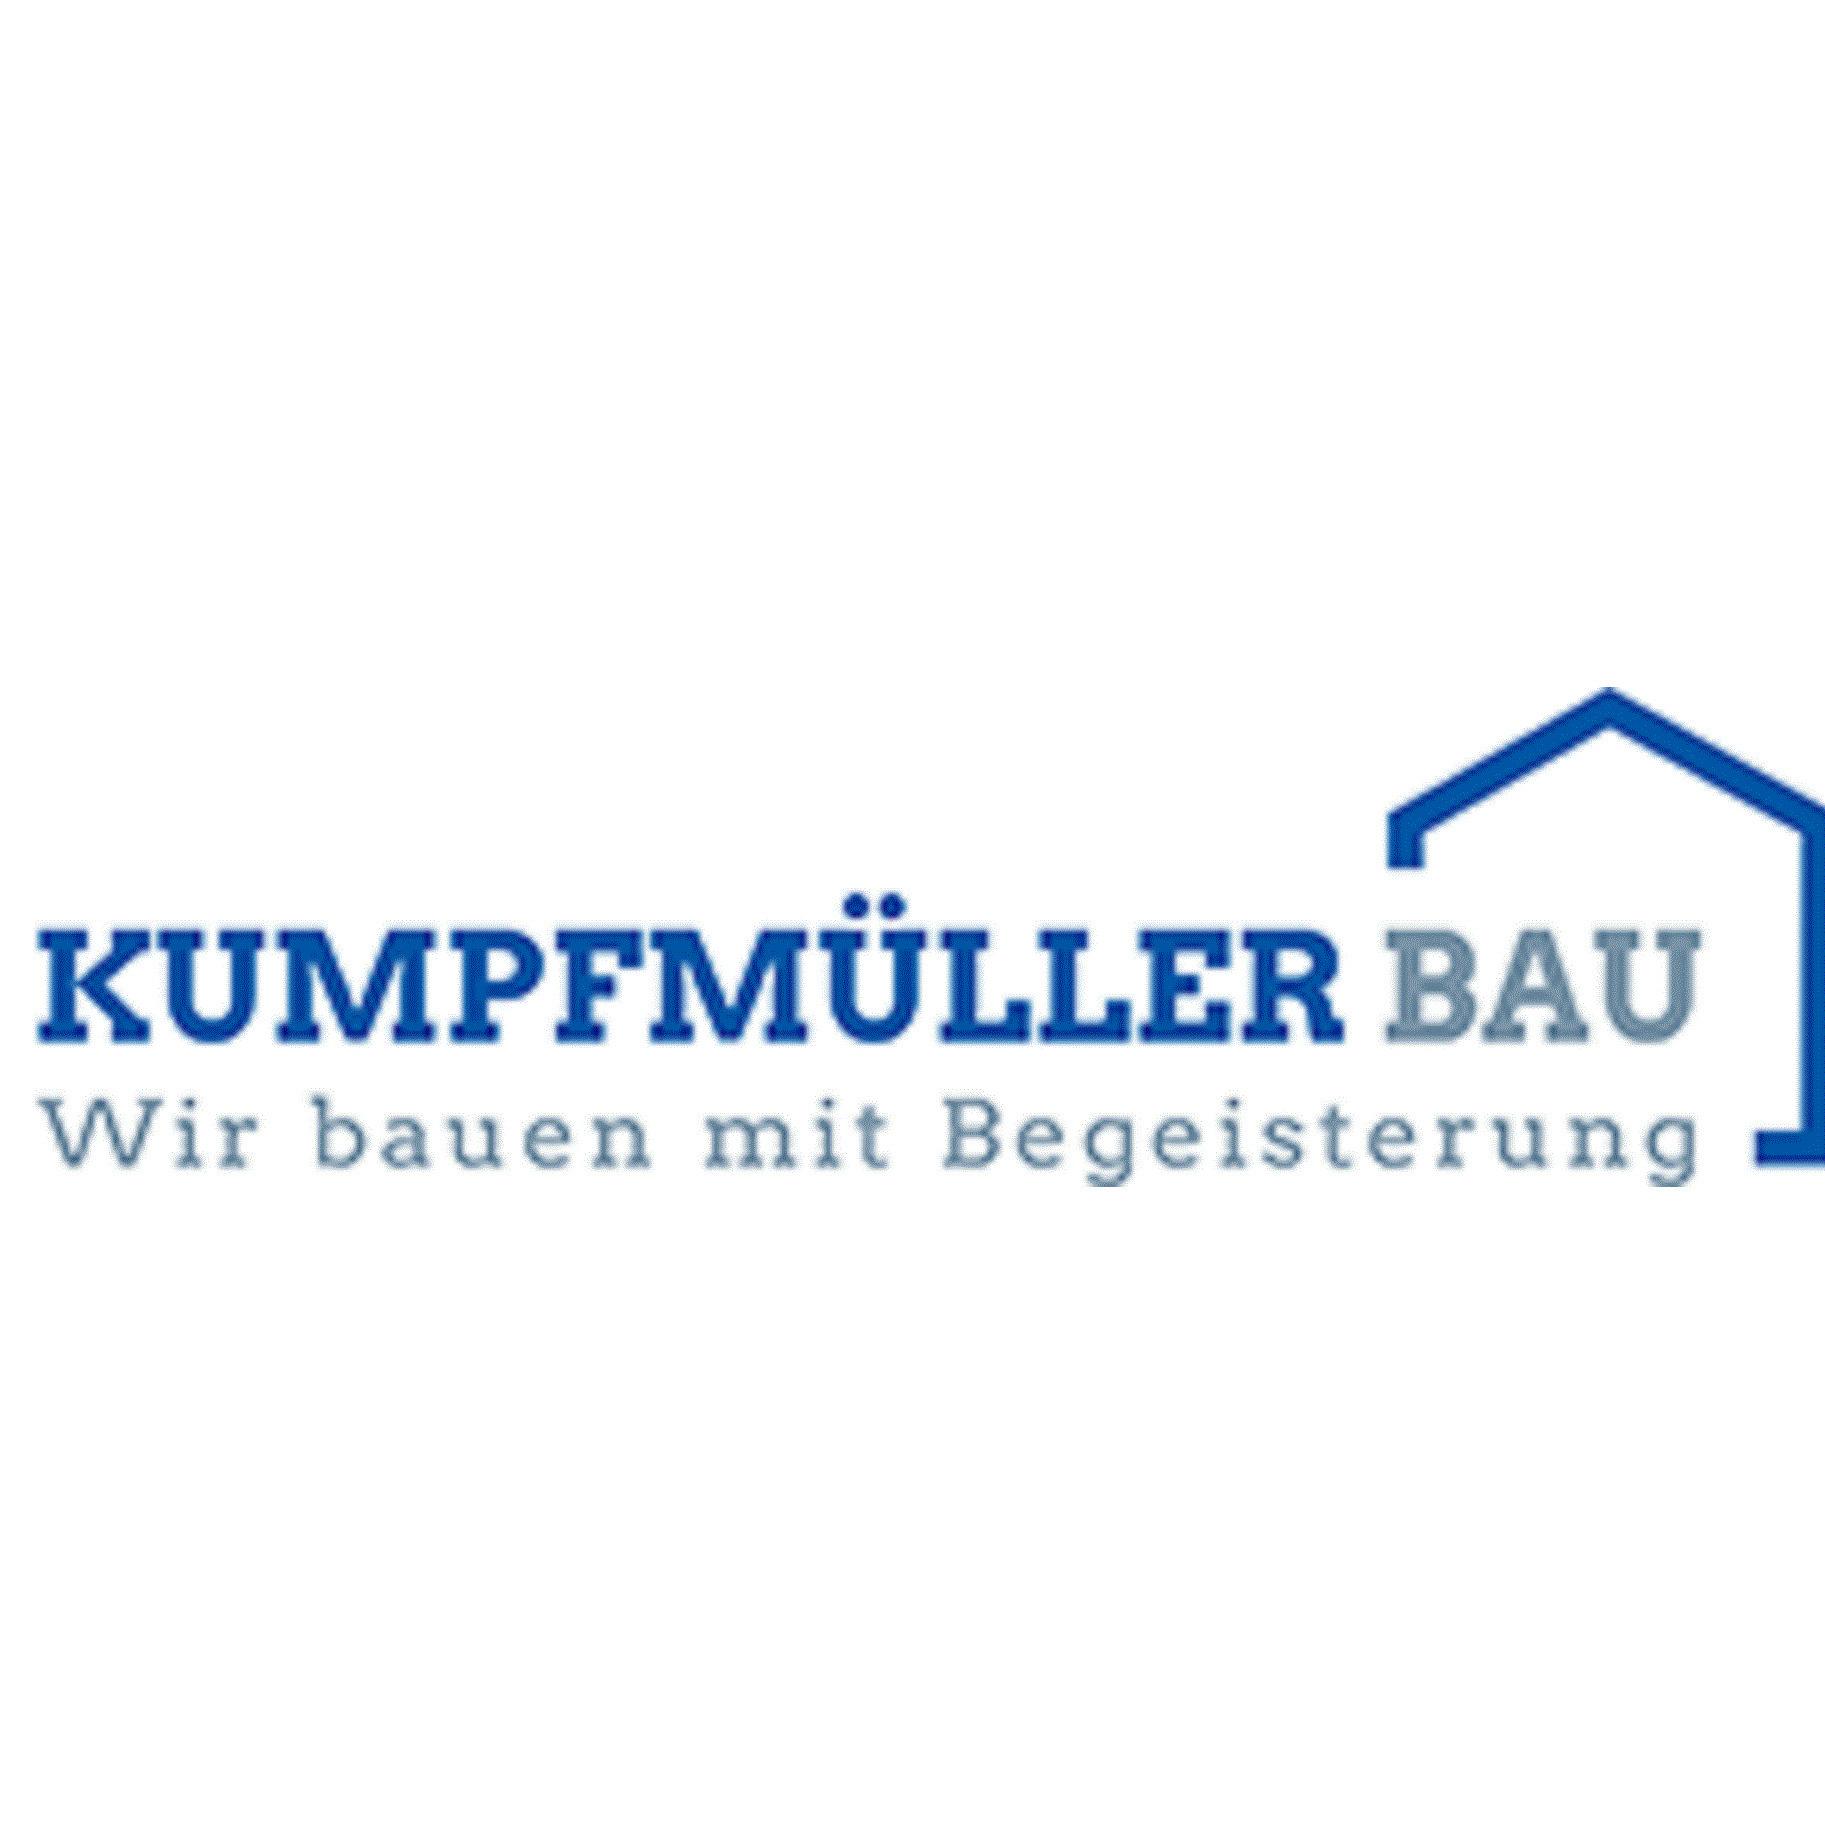 Kumpfmüller Bau GmbH